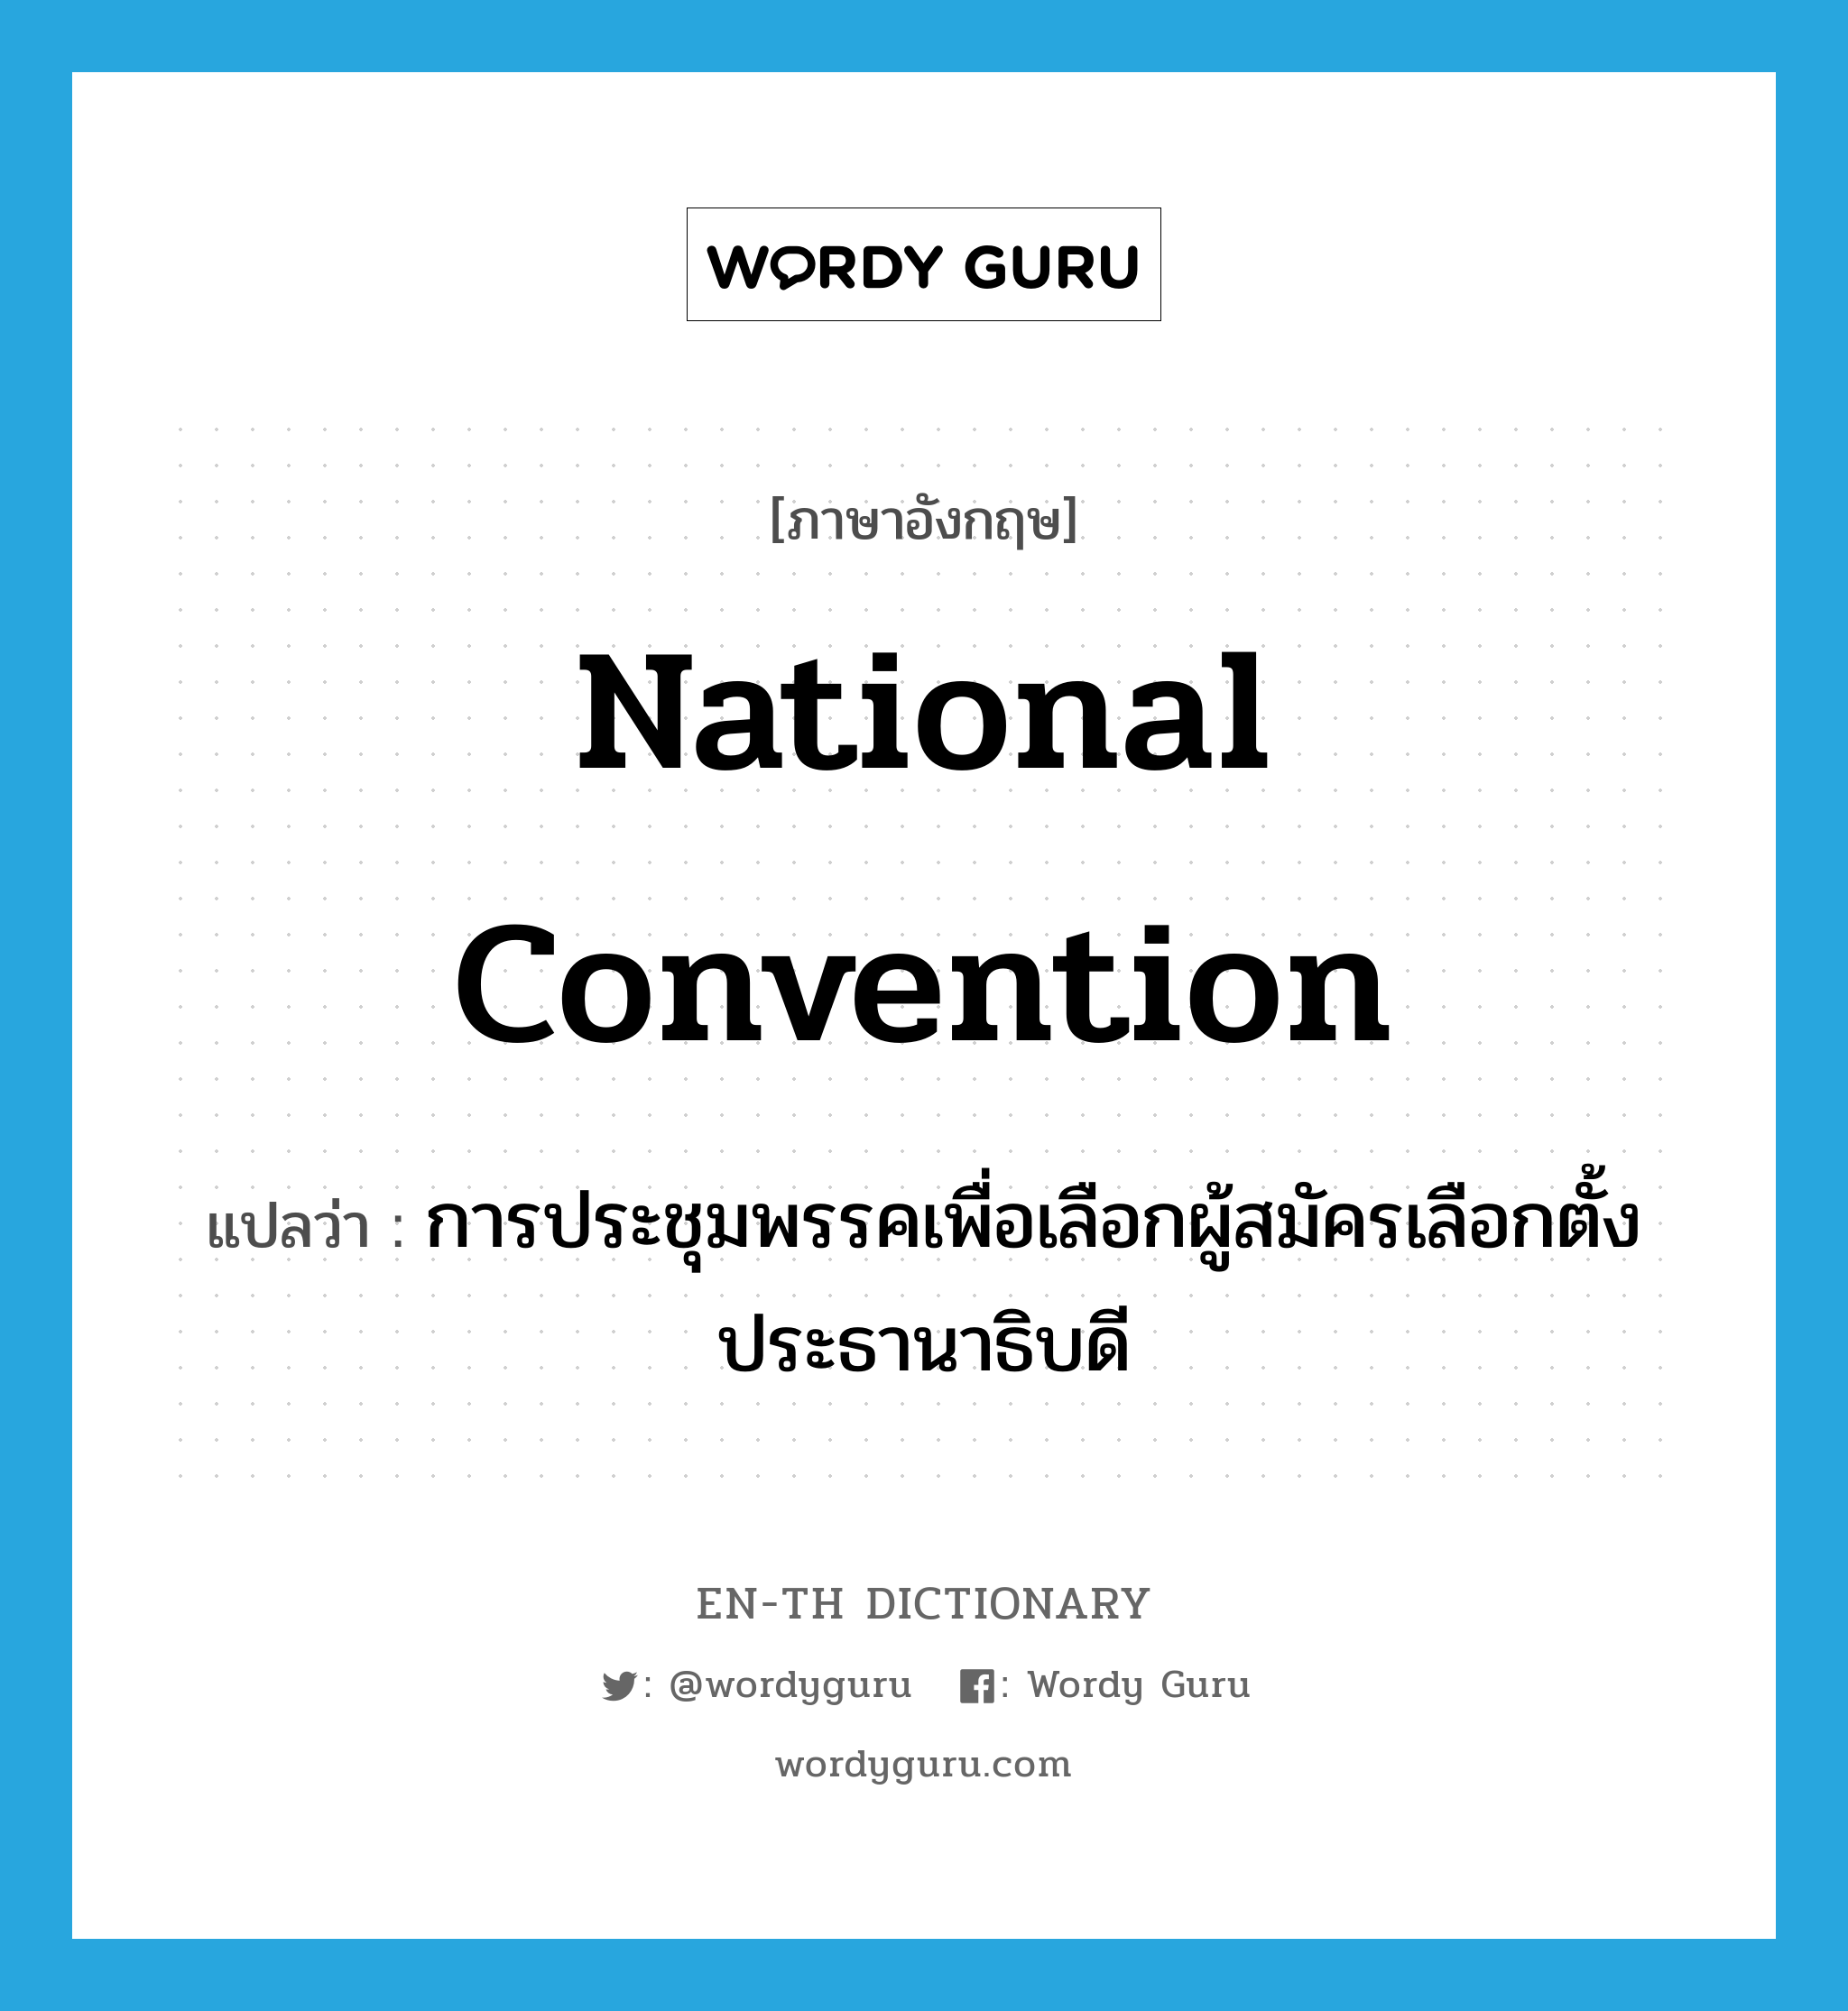 การประชุมพรรคเพื่อเลือกผู้สมัครเลือกตั้งประธานาธิบดี ภาษาอังกฤษ?, คำศัพท์ภาษาอังกฤษ การประชุมพรรคเพื่อเลือกผู้สมัครเลือกตั้งประธานาธิบดี แปลว่า national convention ประเภท N หมวด N